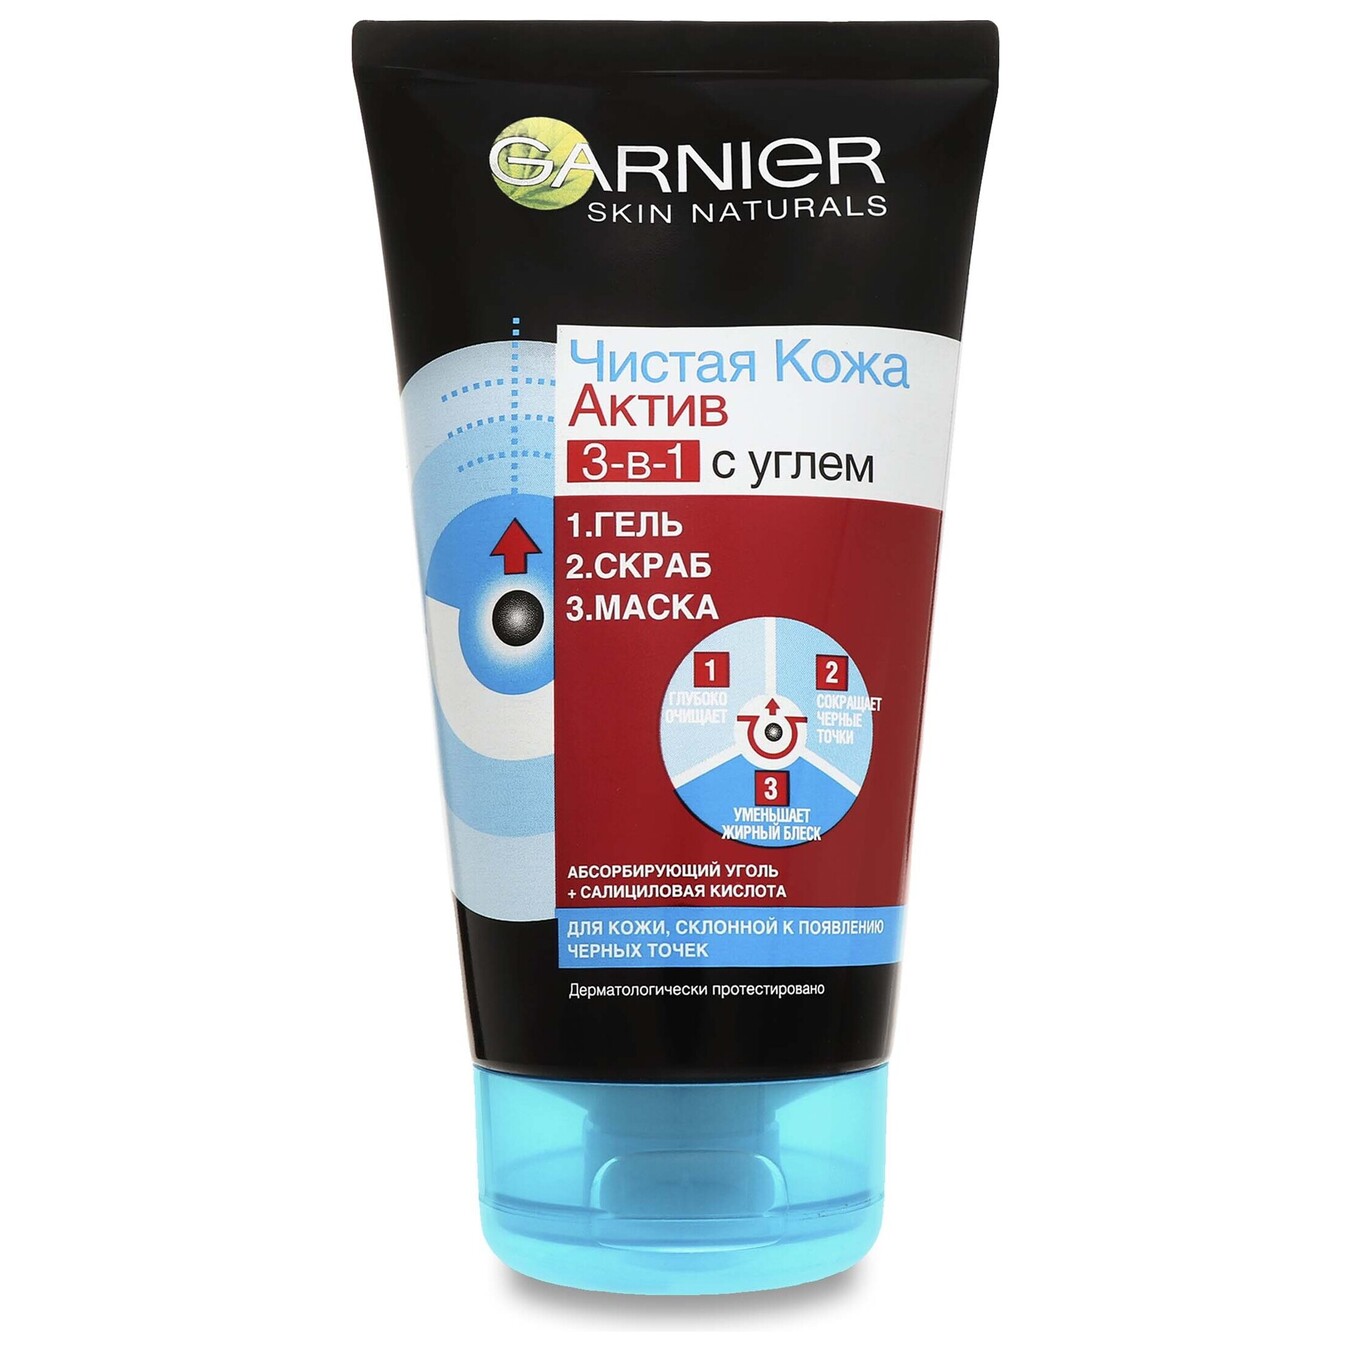 Gel for washing Garnier Skin Naturals 3 in 1 Clean Skin Active 150 ml